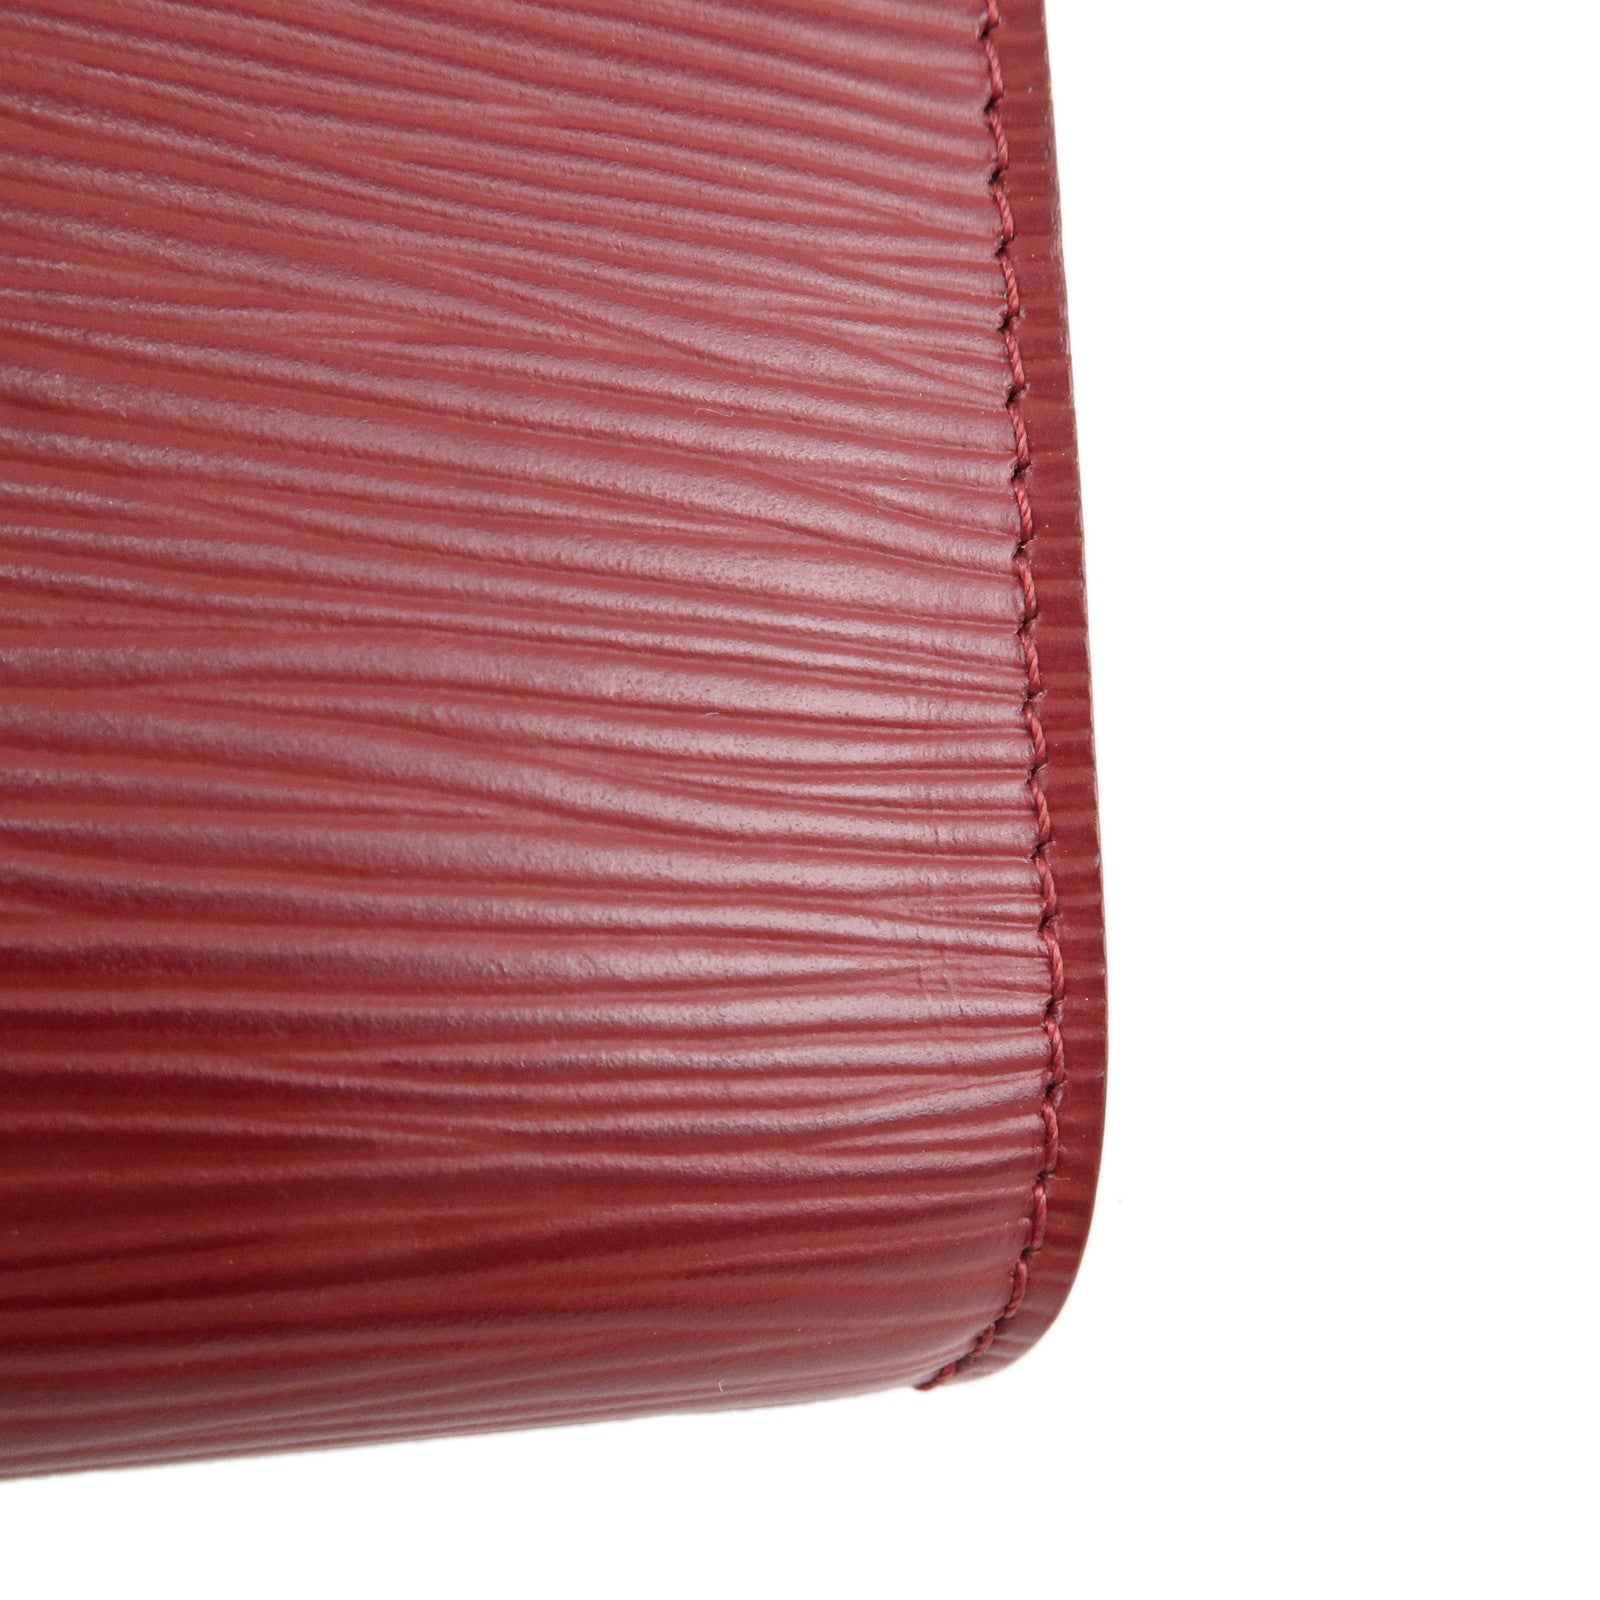 Authentic Vintage Louis Vuitton Red Epi Leather Envelope Clutch Wallet